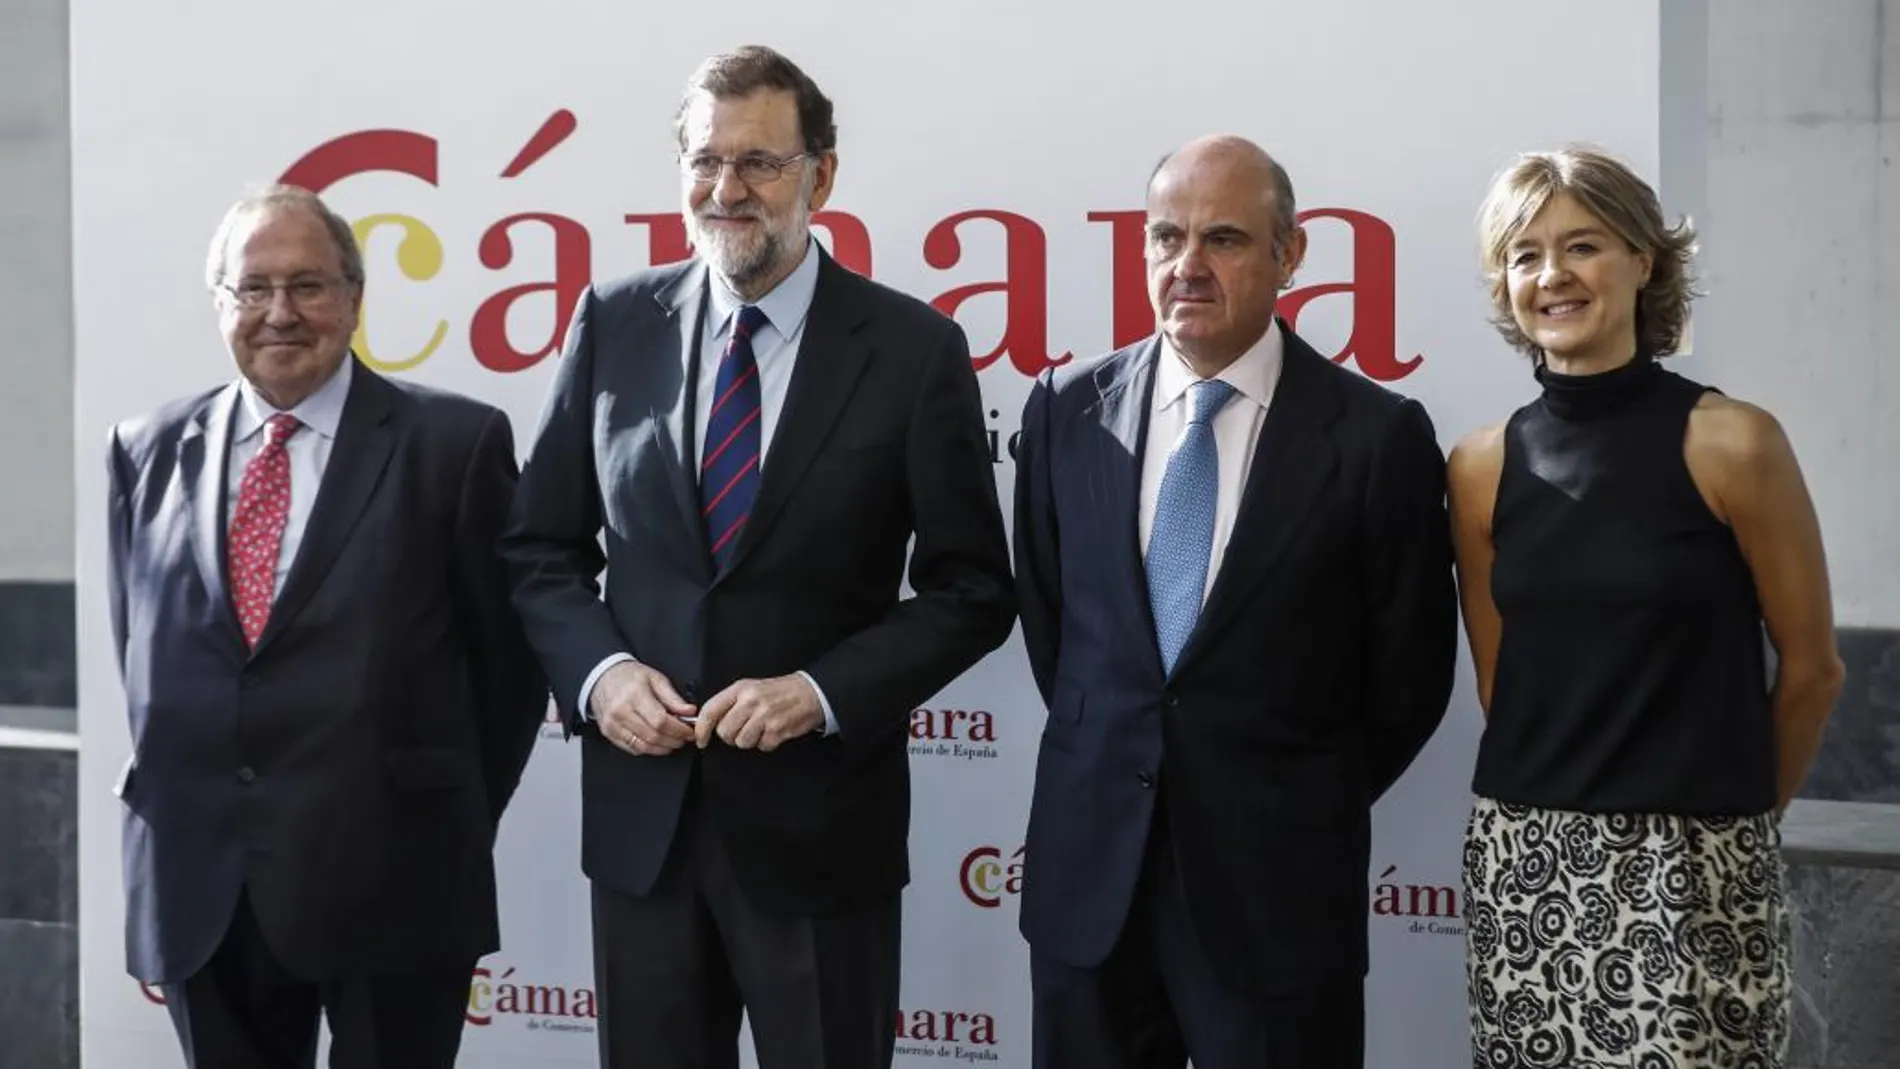 El presidente del Gobierno, Mariano Rajoy (2i), posa junto al presidente de la Cámara de Comercio de España, José Luis Bonet (i), el ministro de Economía y Competitividad, Luis de Guindos (2d), y la ministra de Agricultura, Pesca y Alimentación, Isabel García-Tejerina.